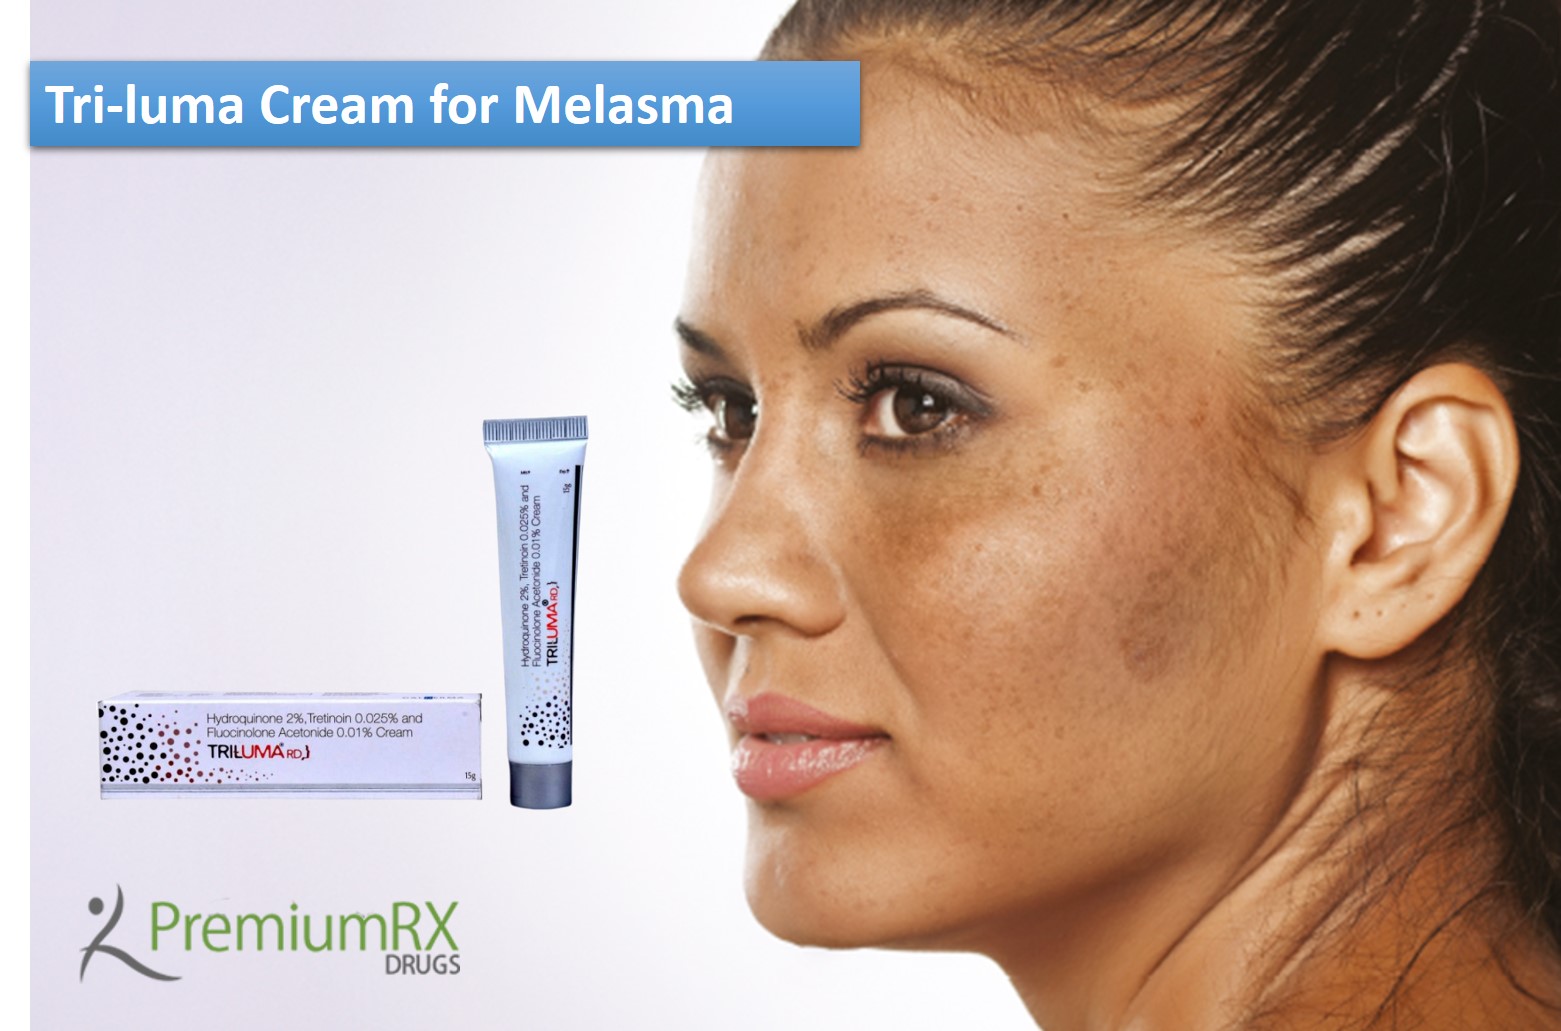 Tri-luma Cream for Melasma for Reviews